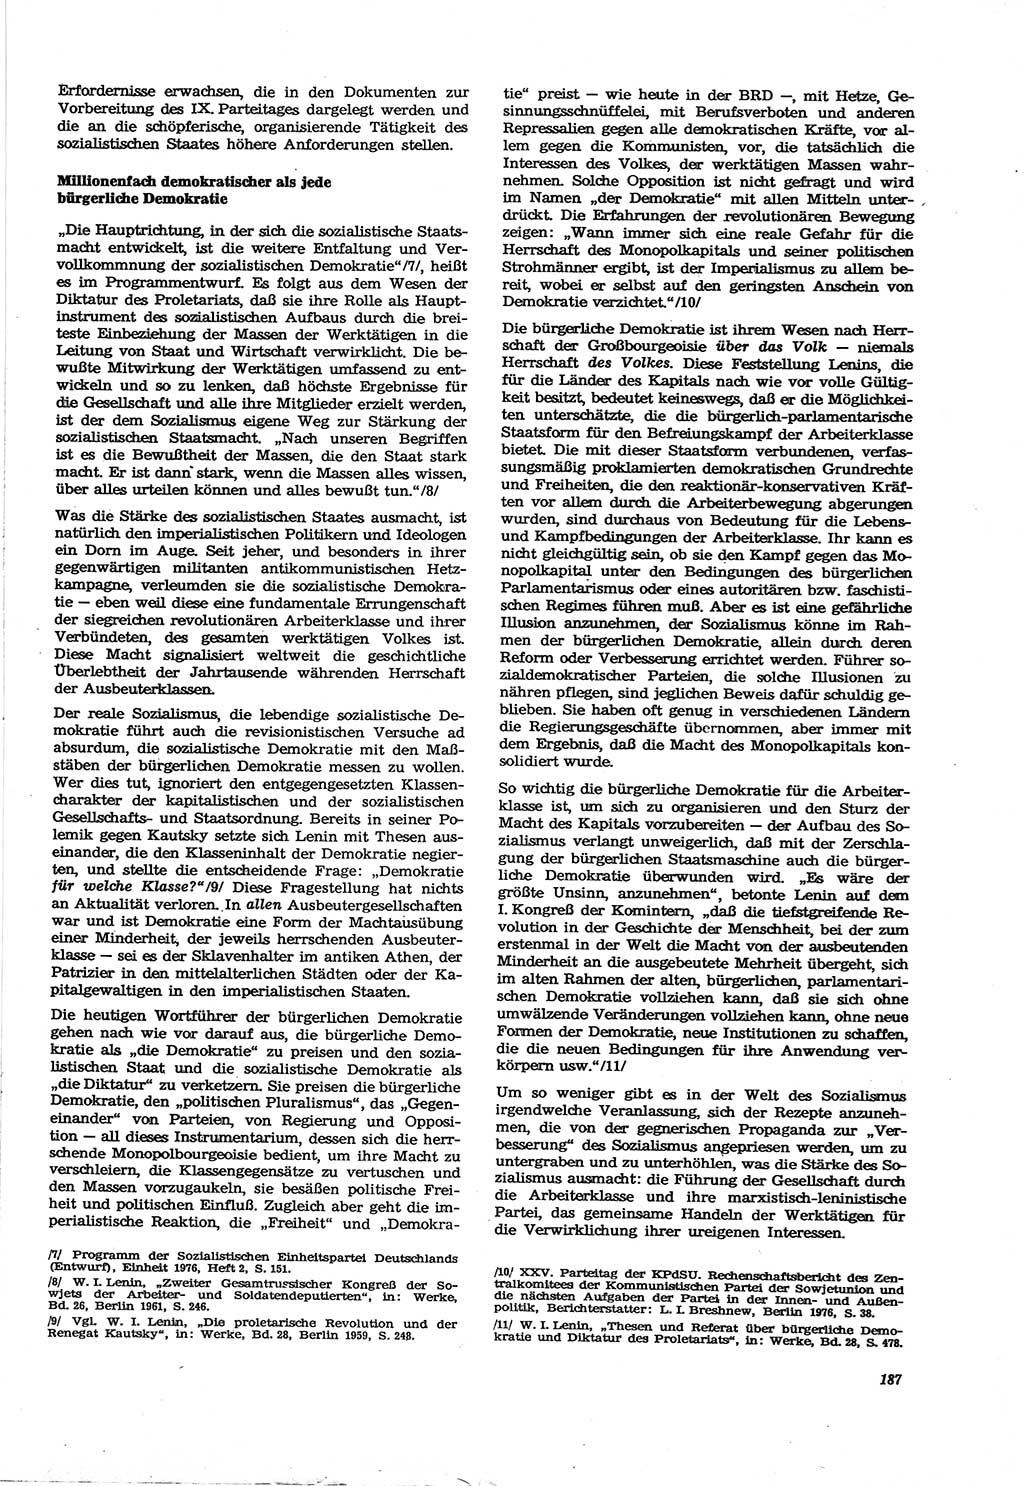 Neue Justiz (NJ), Zeitschrift für Recht und Rechtswissenschaft [Deutsche Demokratische Republik (DDR)], 30. Jahrgang 1976, Seite 187 (NJ DDR 1976, S. 187)